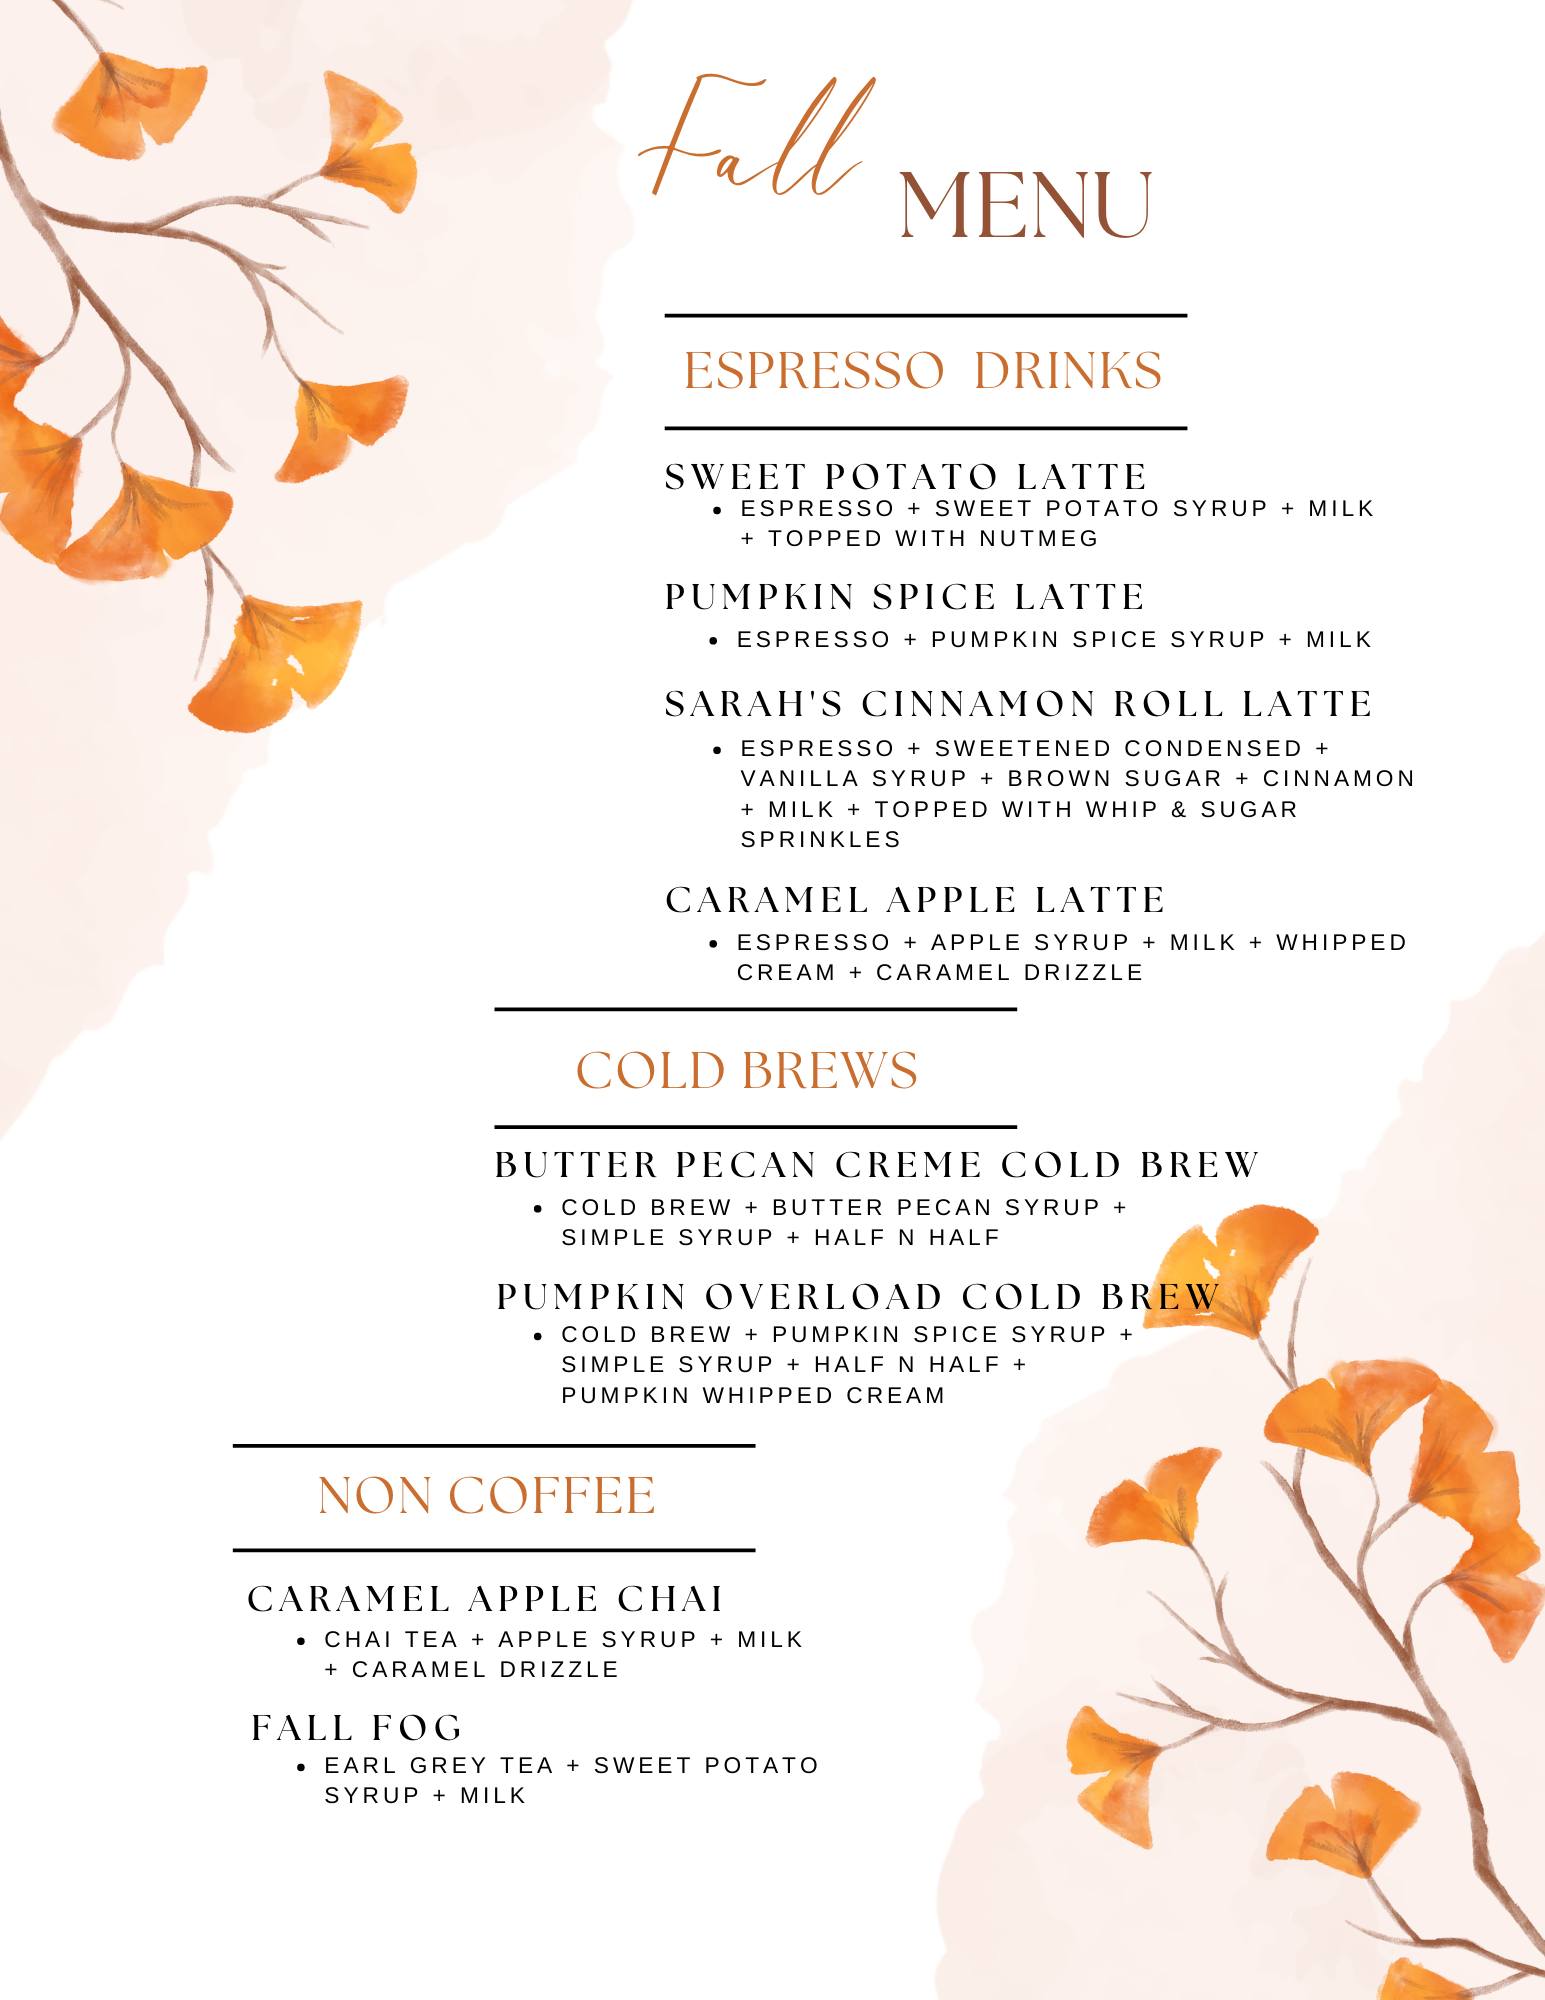 Monticello Coffee Company fall menu.